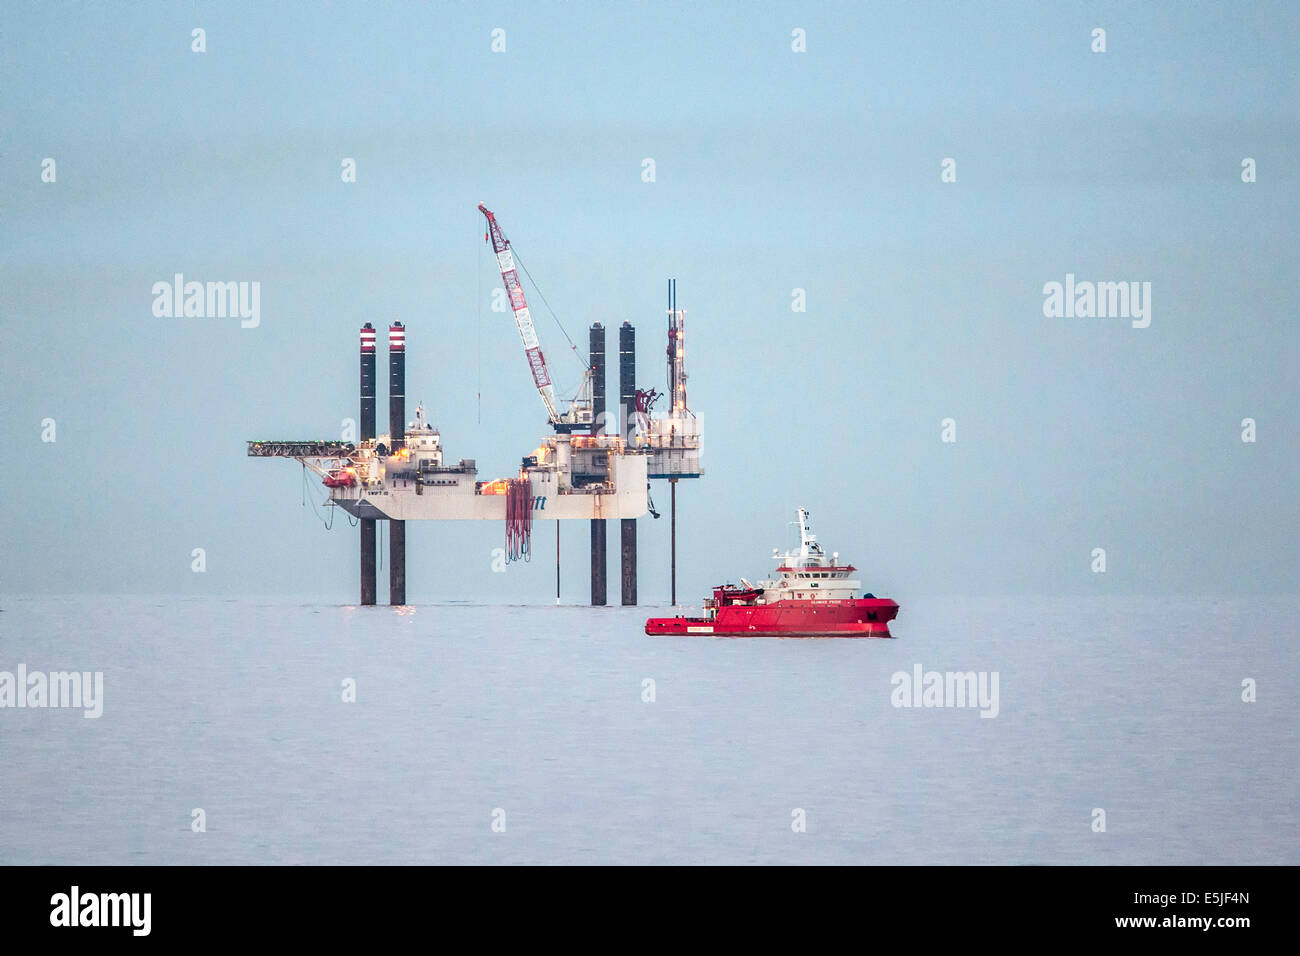 Niederlande, Den Helder, Niederlande Wirtschaftszone auf Nordsee. Offshore-Bohrplattform SWIFT 10. Vordergrund Offshore-Versorgungsschiff Stockfoto